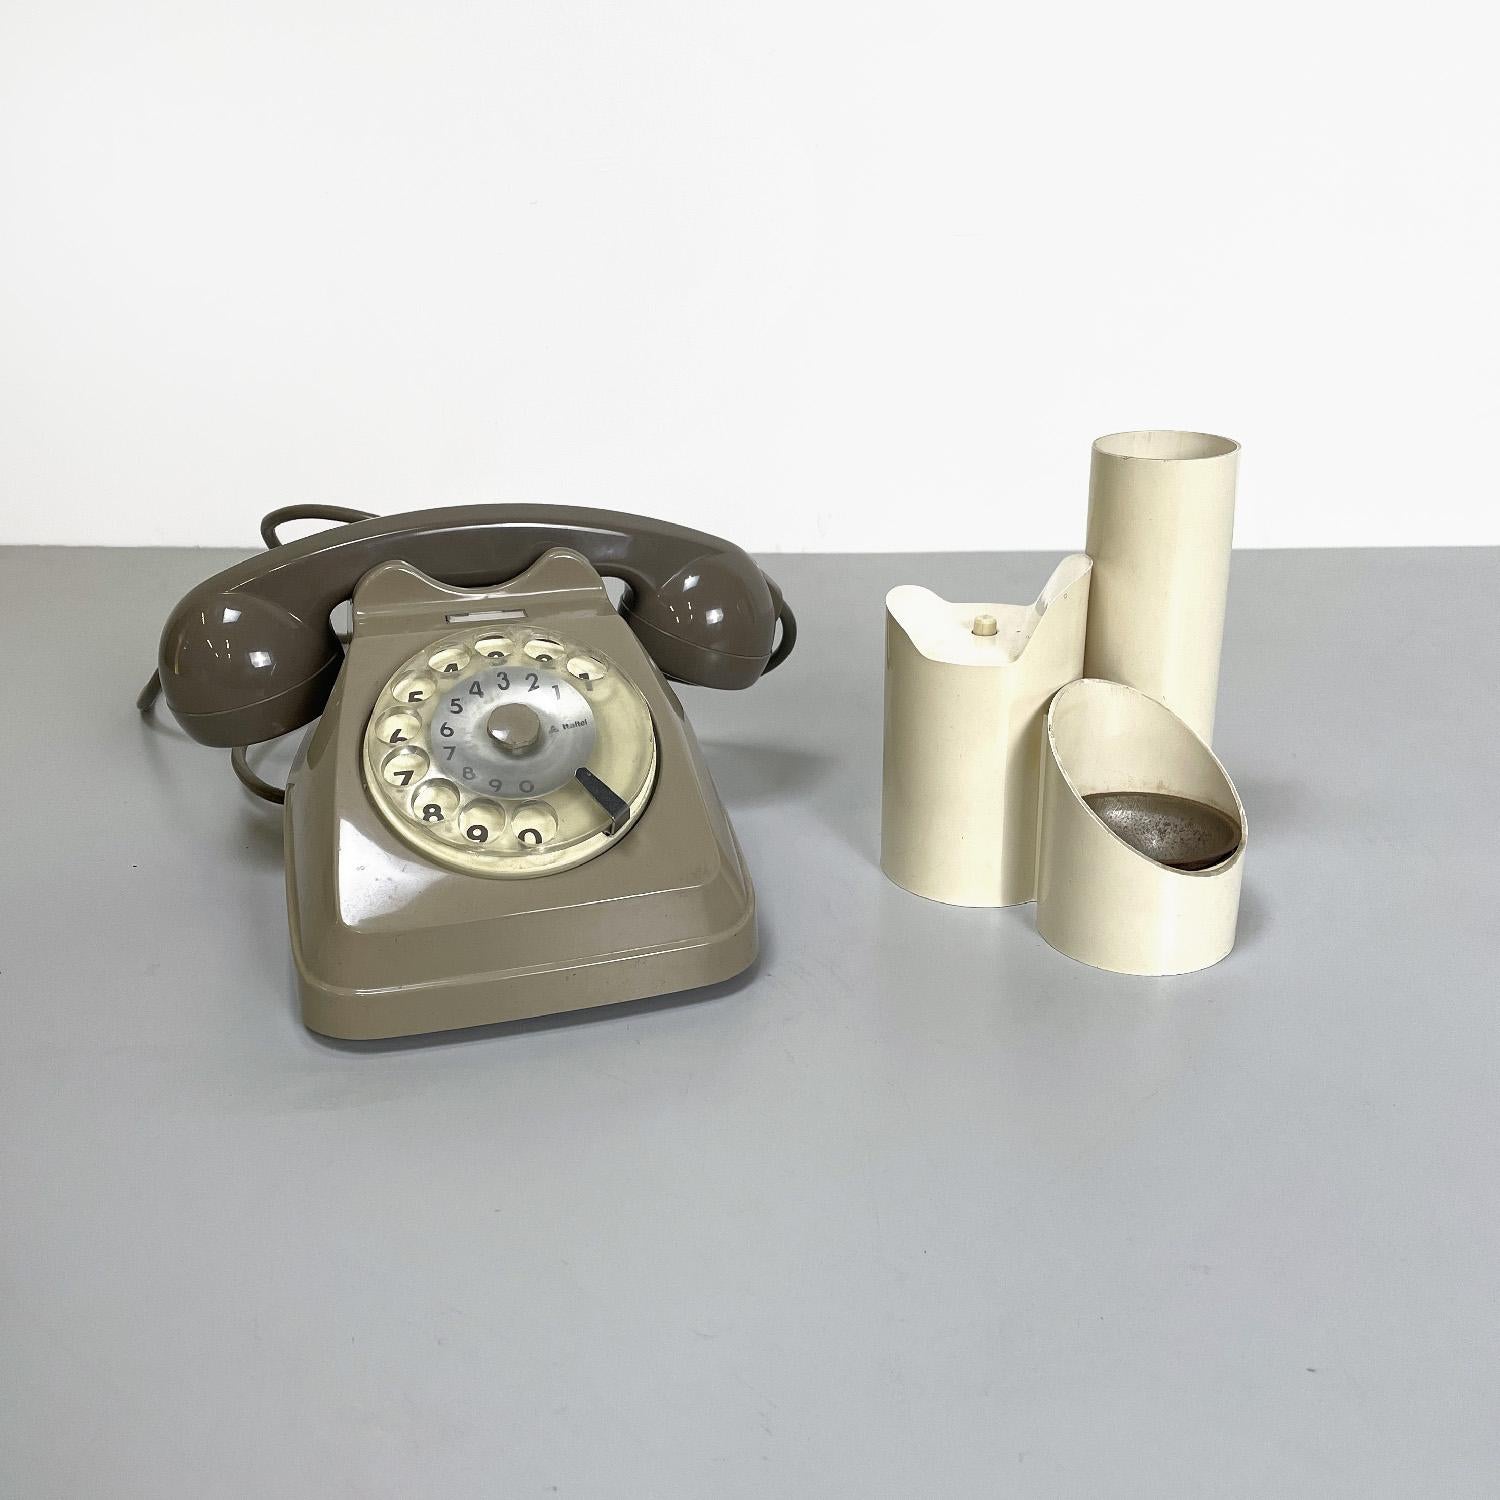 Téléphone Siemens Sip italien du milieu du siècle avec boîte à musique à porte-combiné, années 1960
Ensemble composé d'un téléphone fixe à cadran rotatif mod. Sip et d'une boîte à musique à combiné. Le téléphone est en plastique gris tourterelle